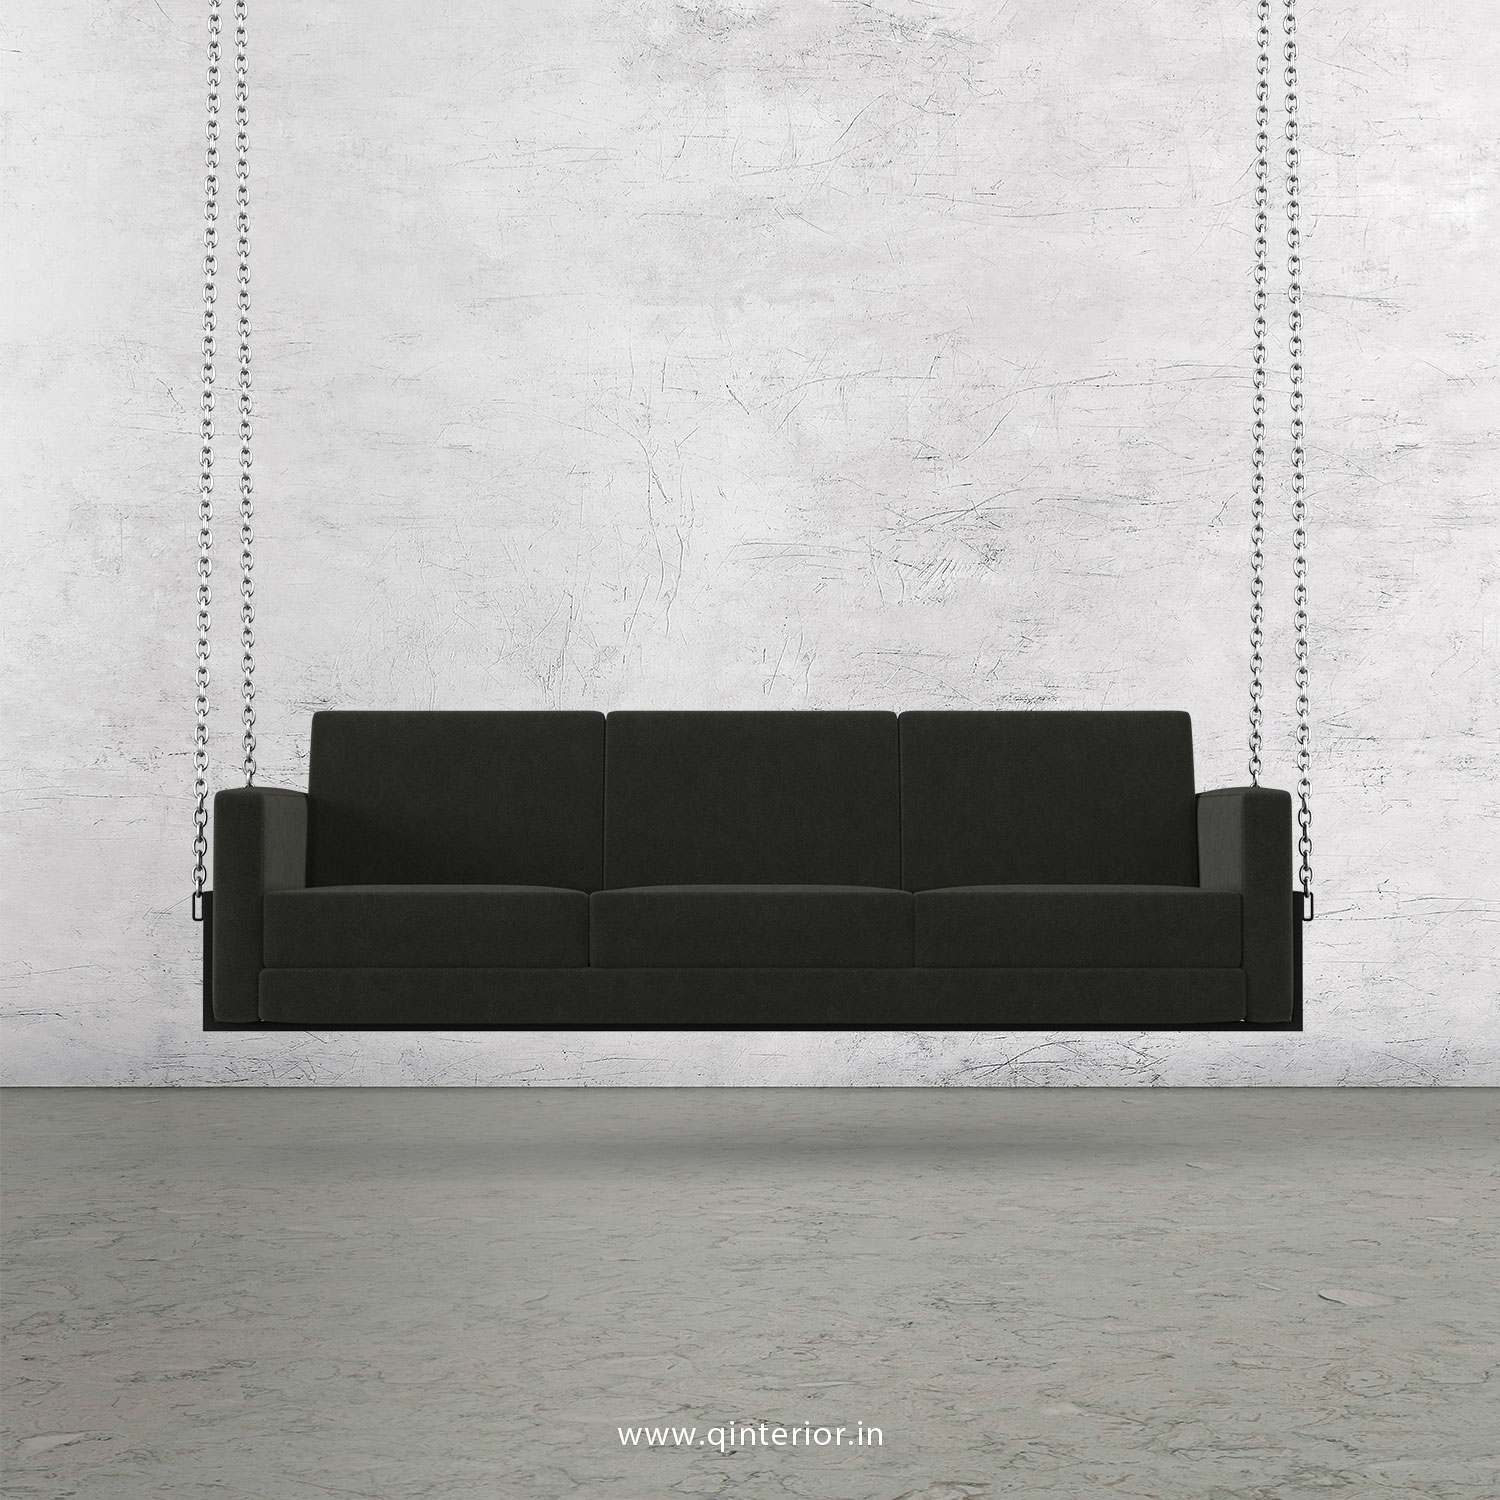 NIRVANA 3 Seater Swing Sofa in Velvet Fabric - SSF001 VL15